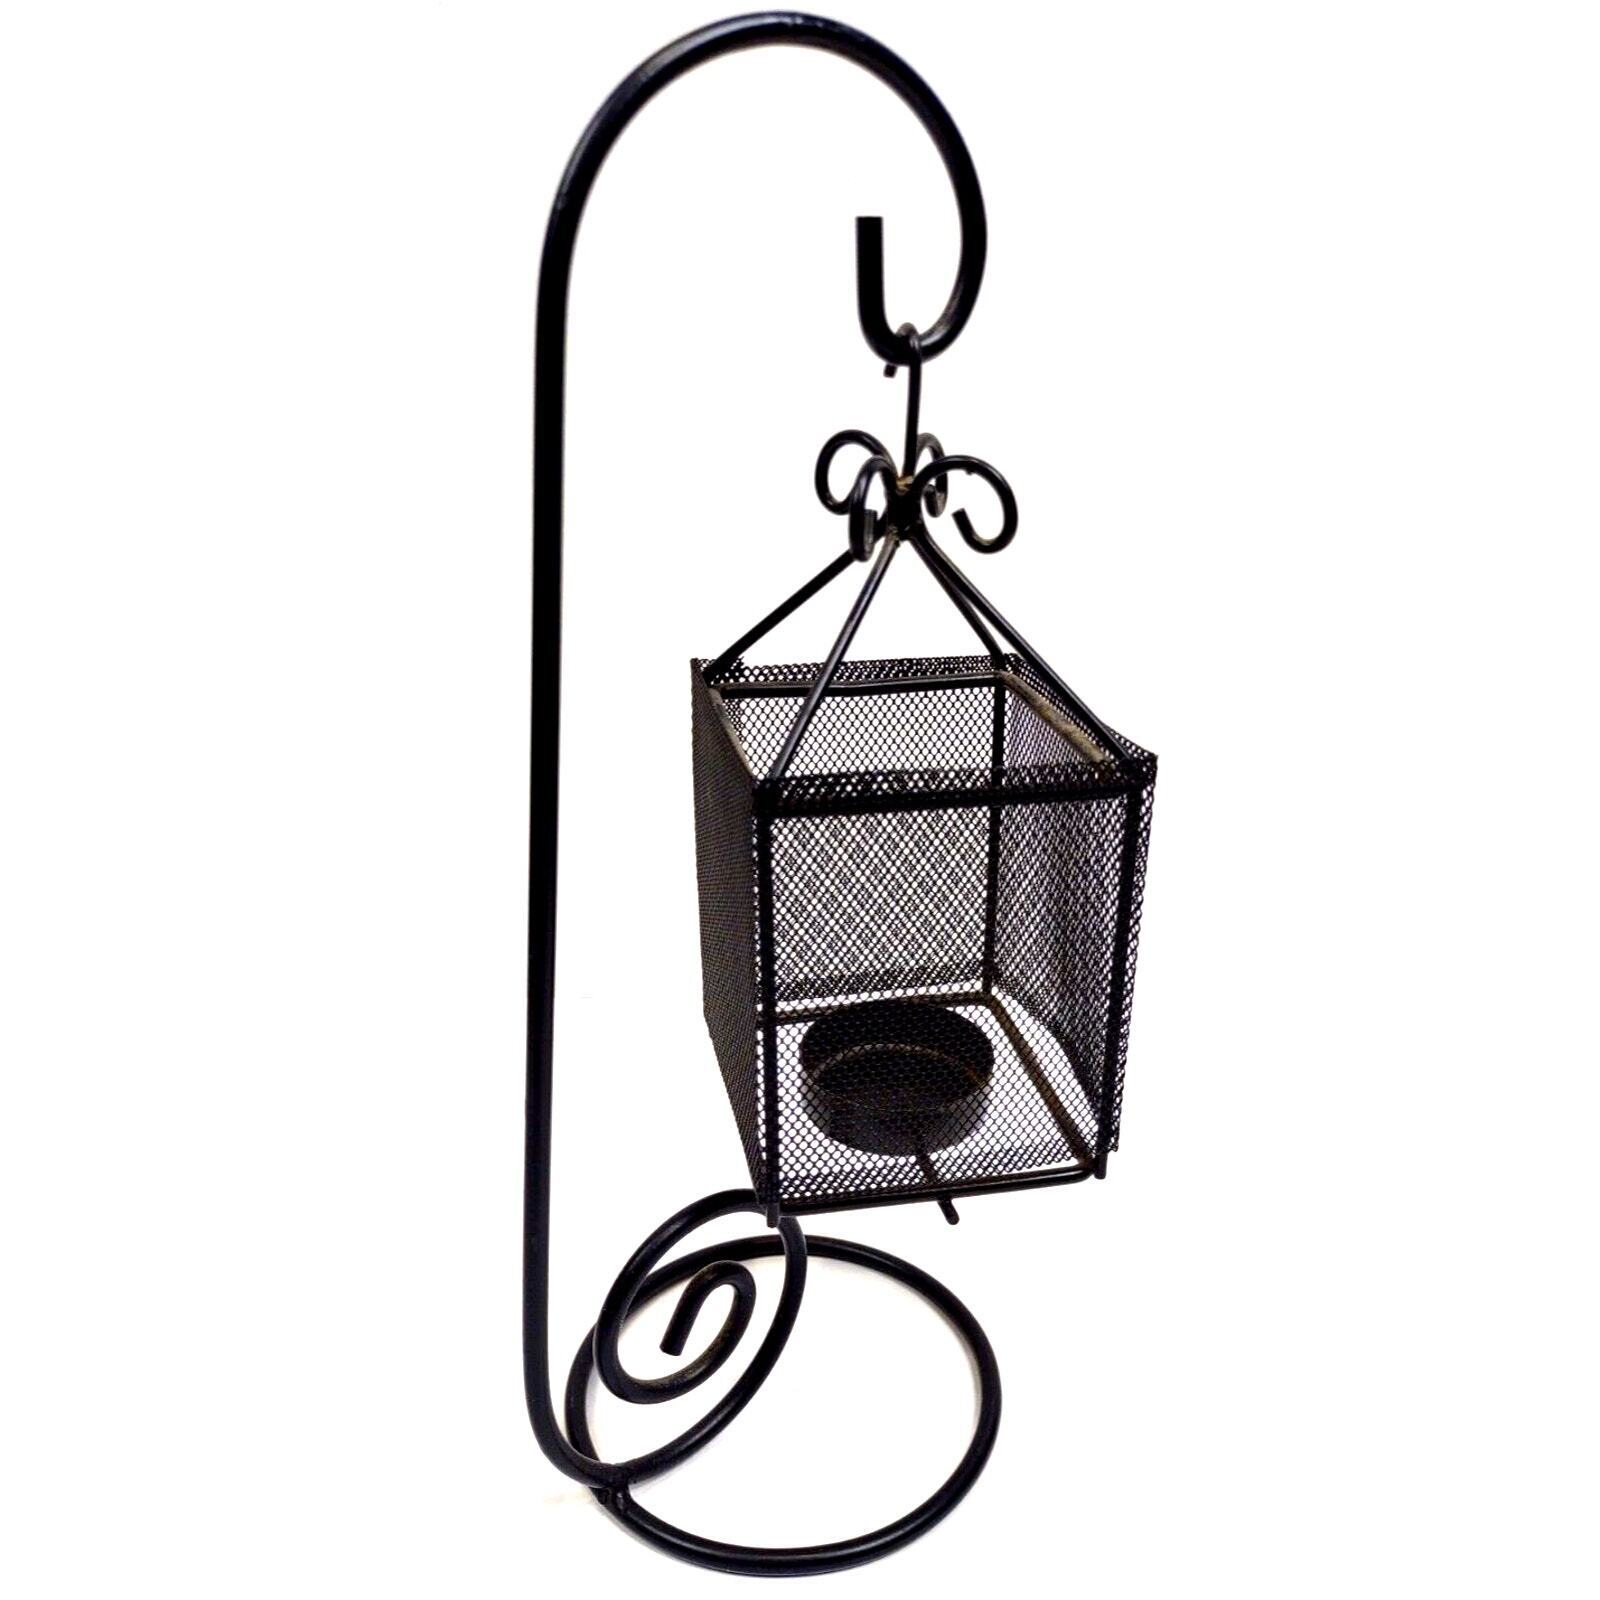 Vintage Hanging Lantern for Votive Candle Antique Look Black Metal Stand Basket